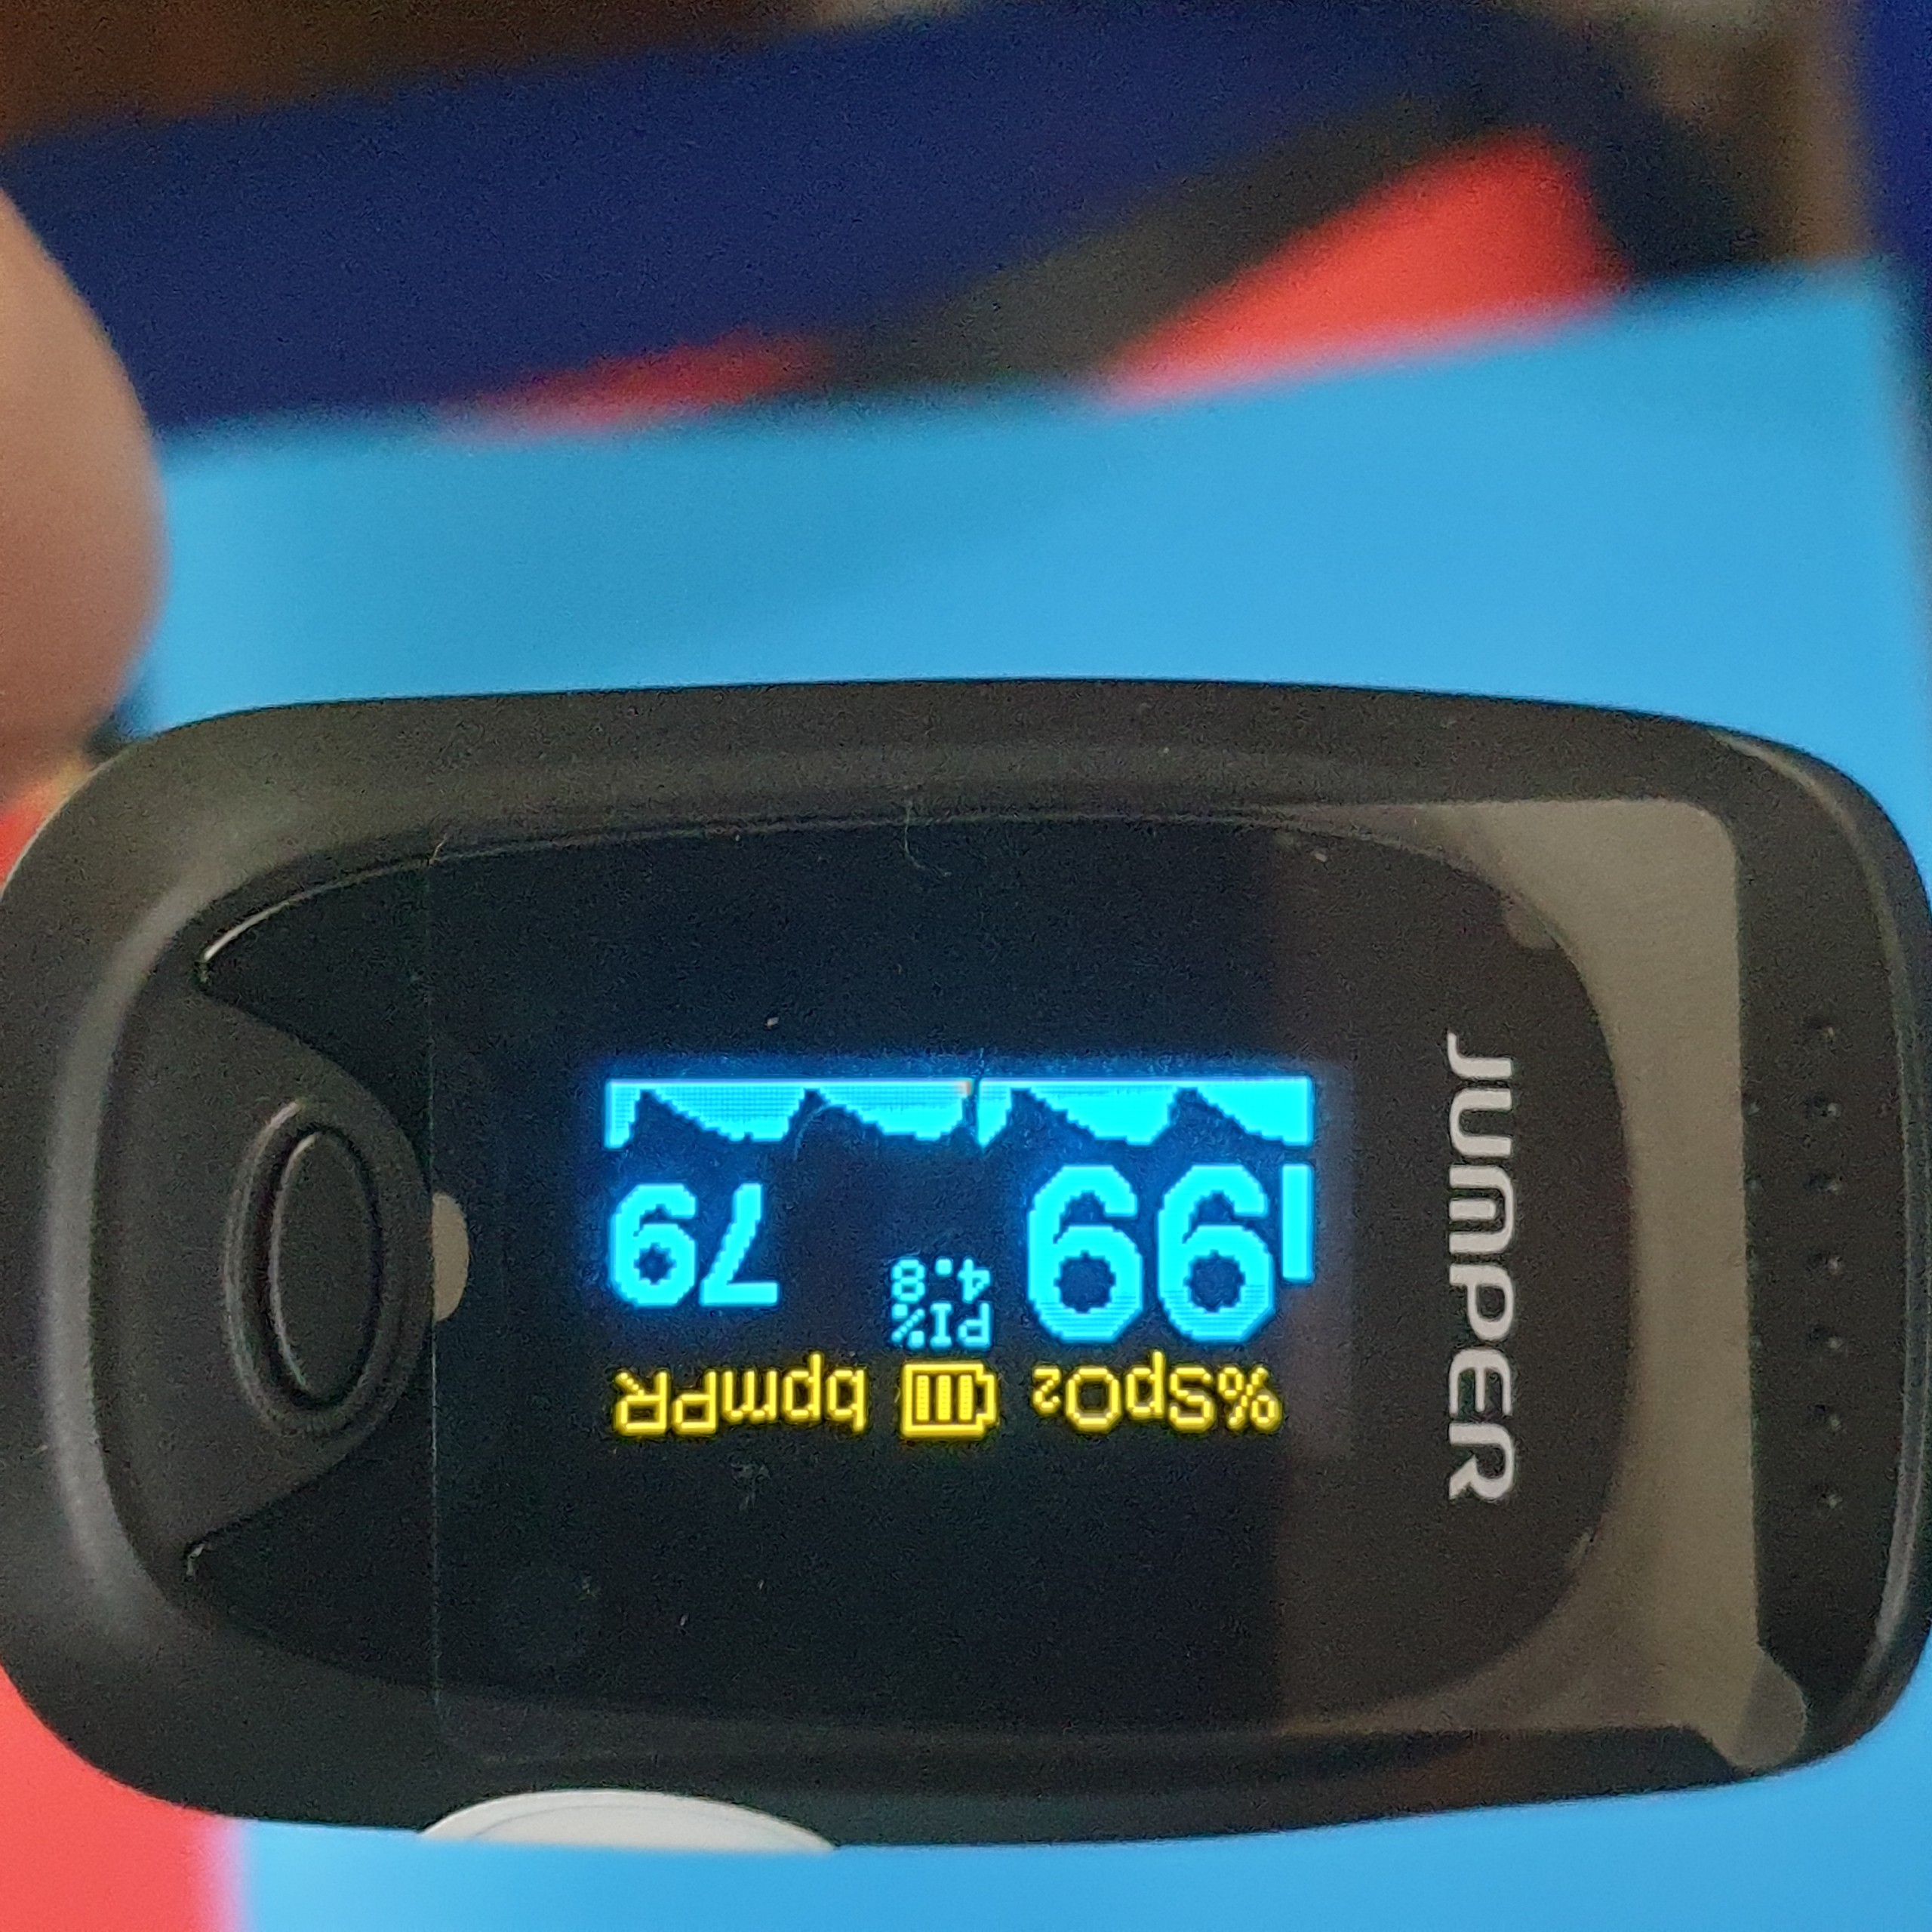 máy đo nồng độ oxy máu spo2 và nhịp tim, chỉ số pi jumper jpd-500d chứng 6